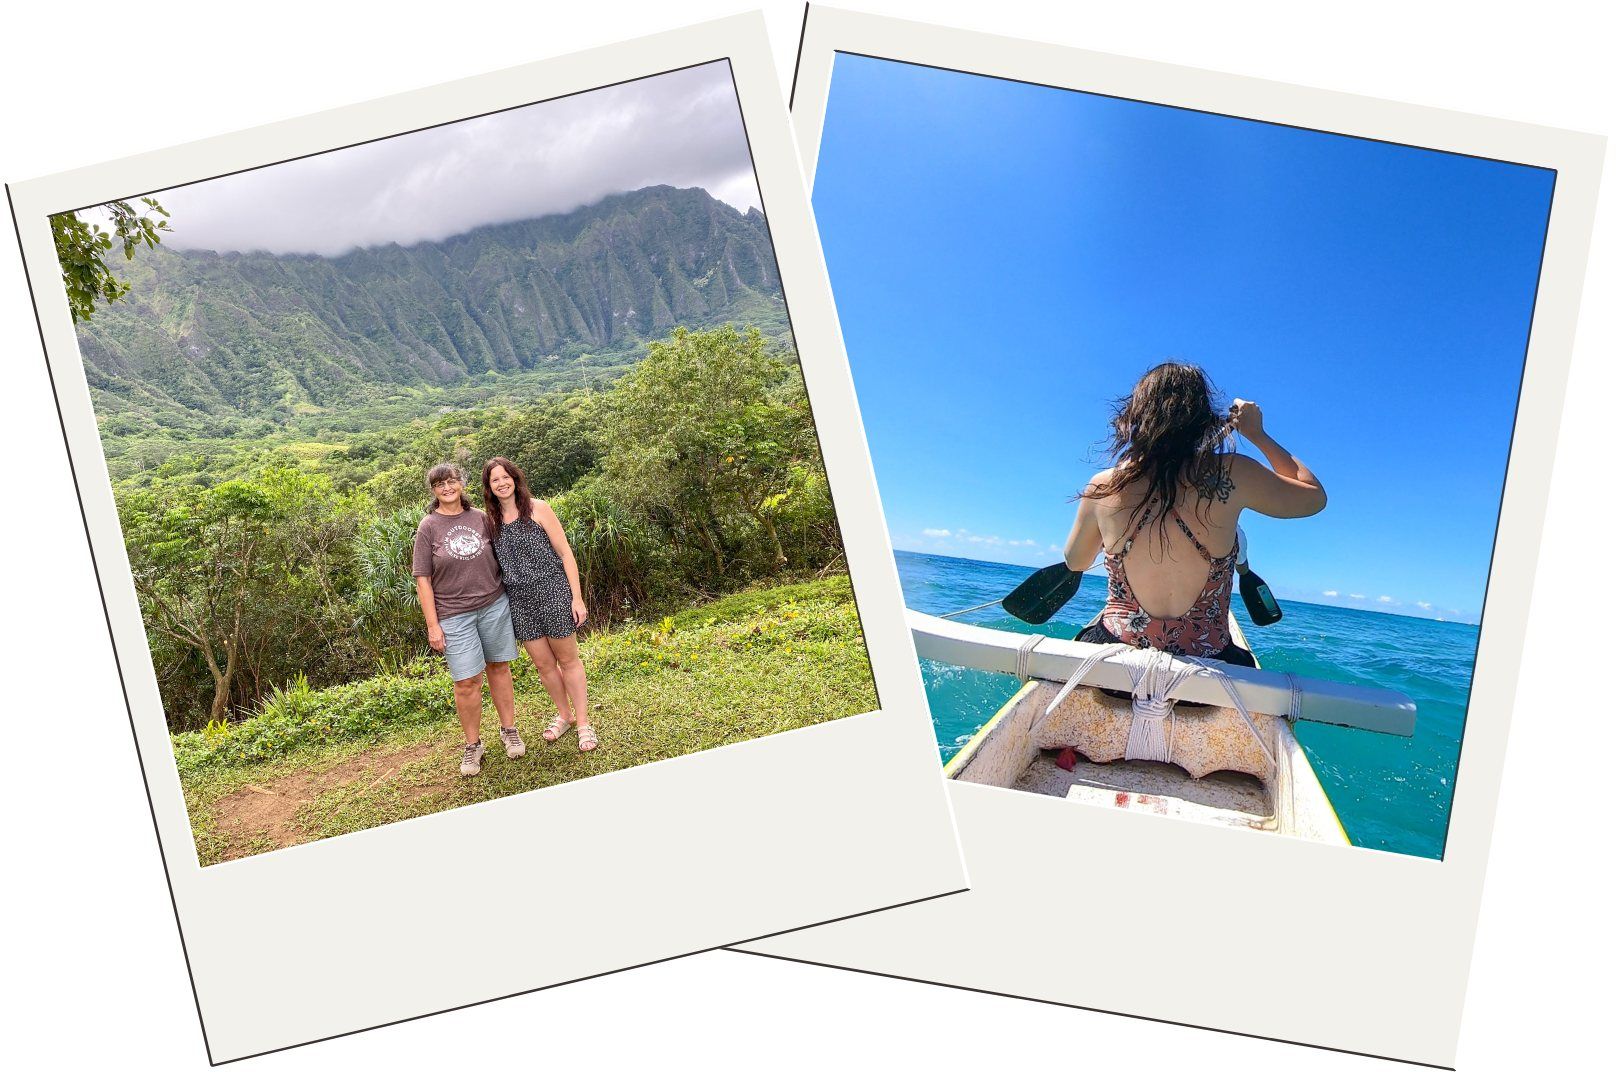 plan a mother-daughter Hawaii trip